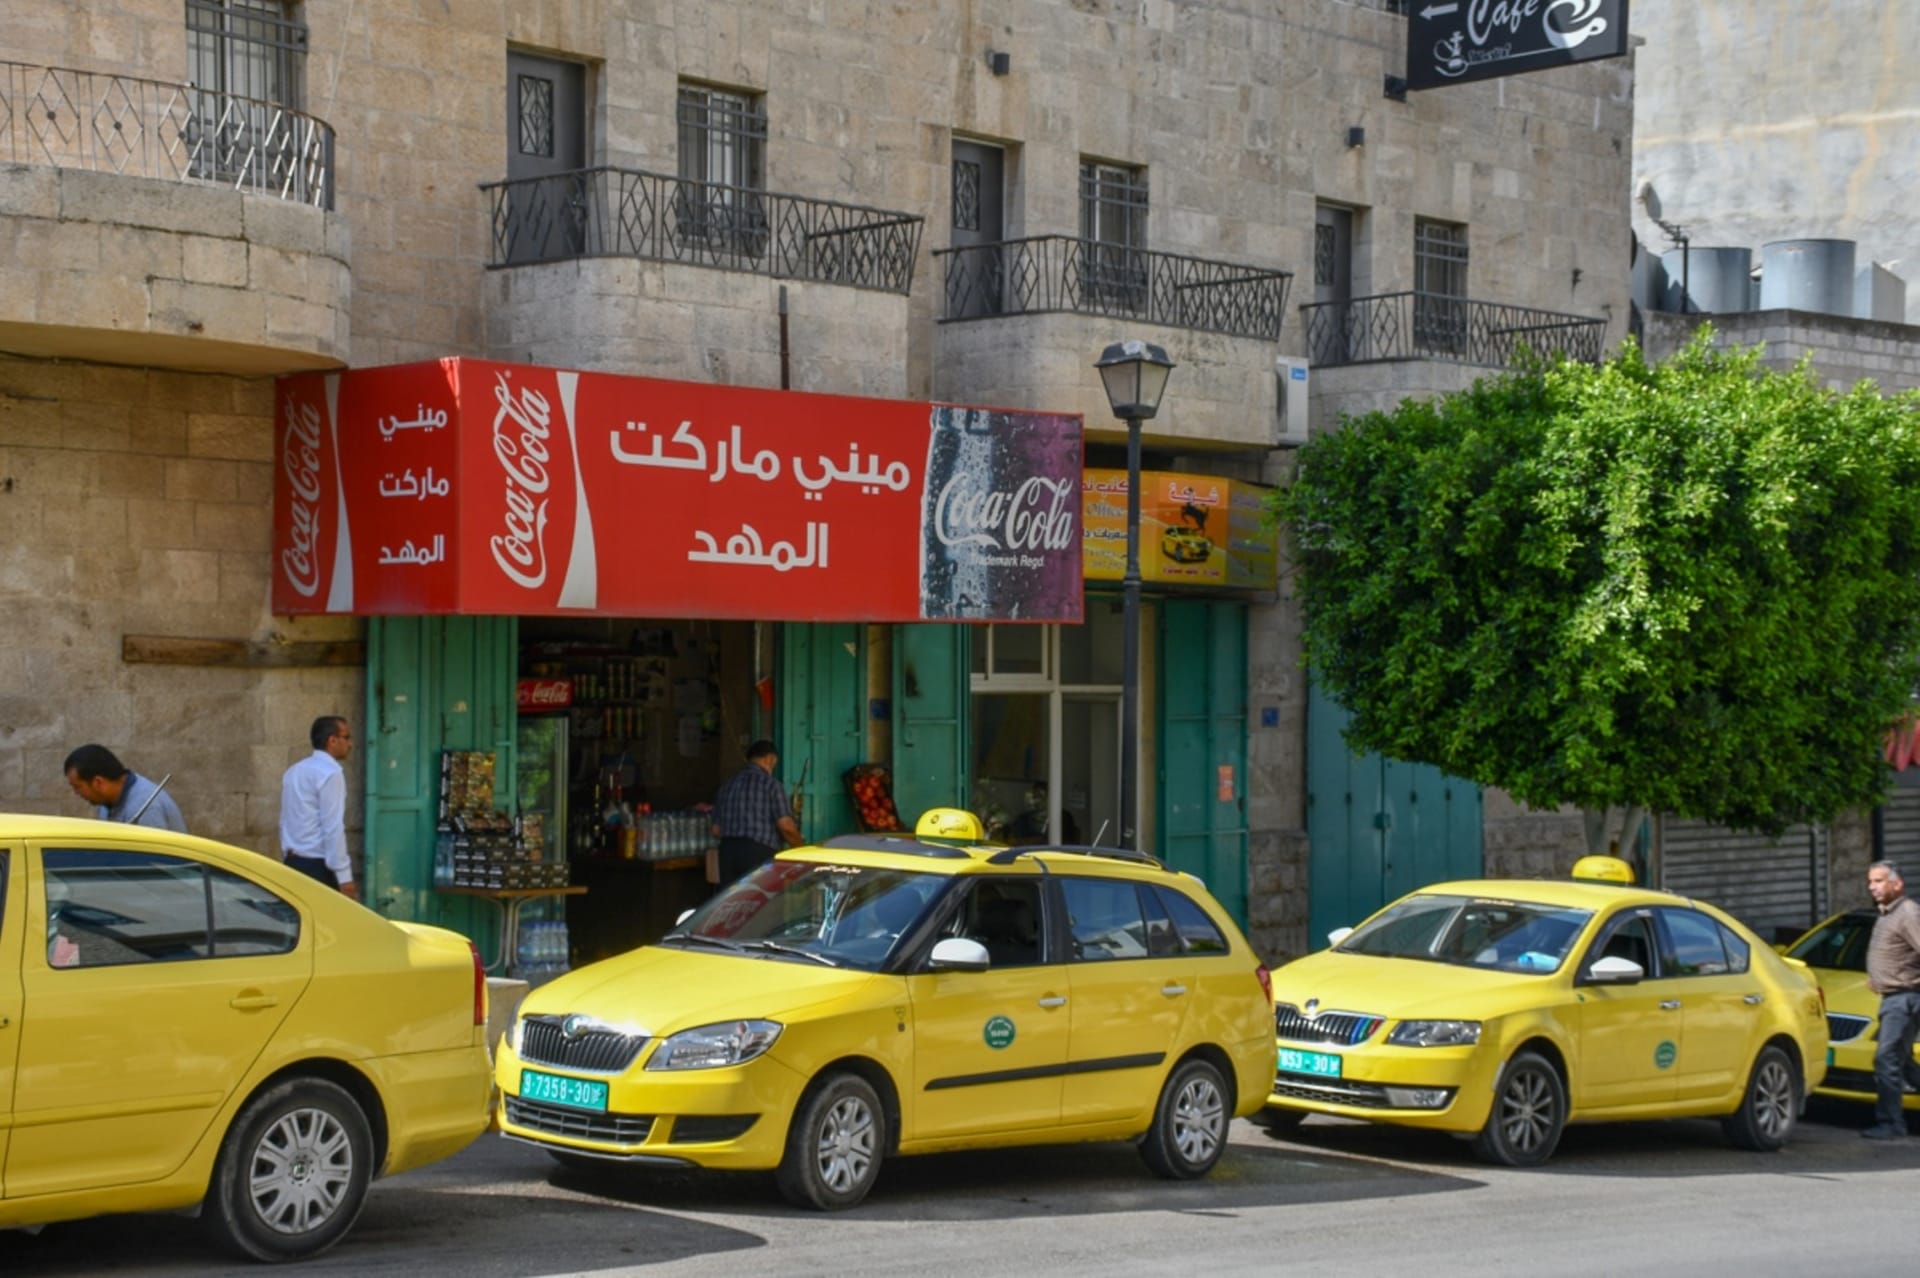 Žluté vozy taxíků v Palestině zpravidla bývají české škodovky.